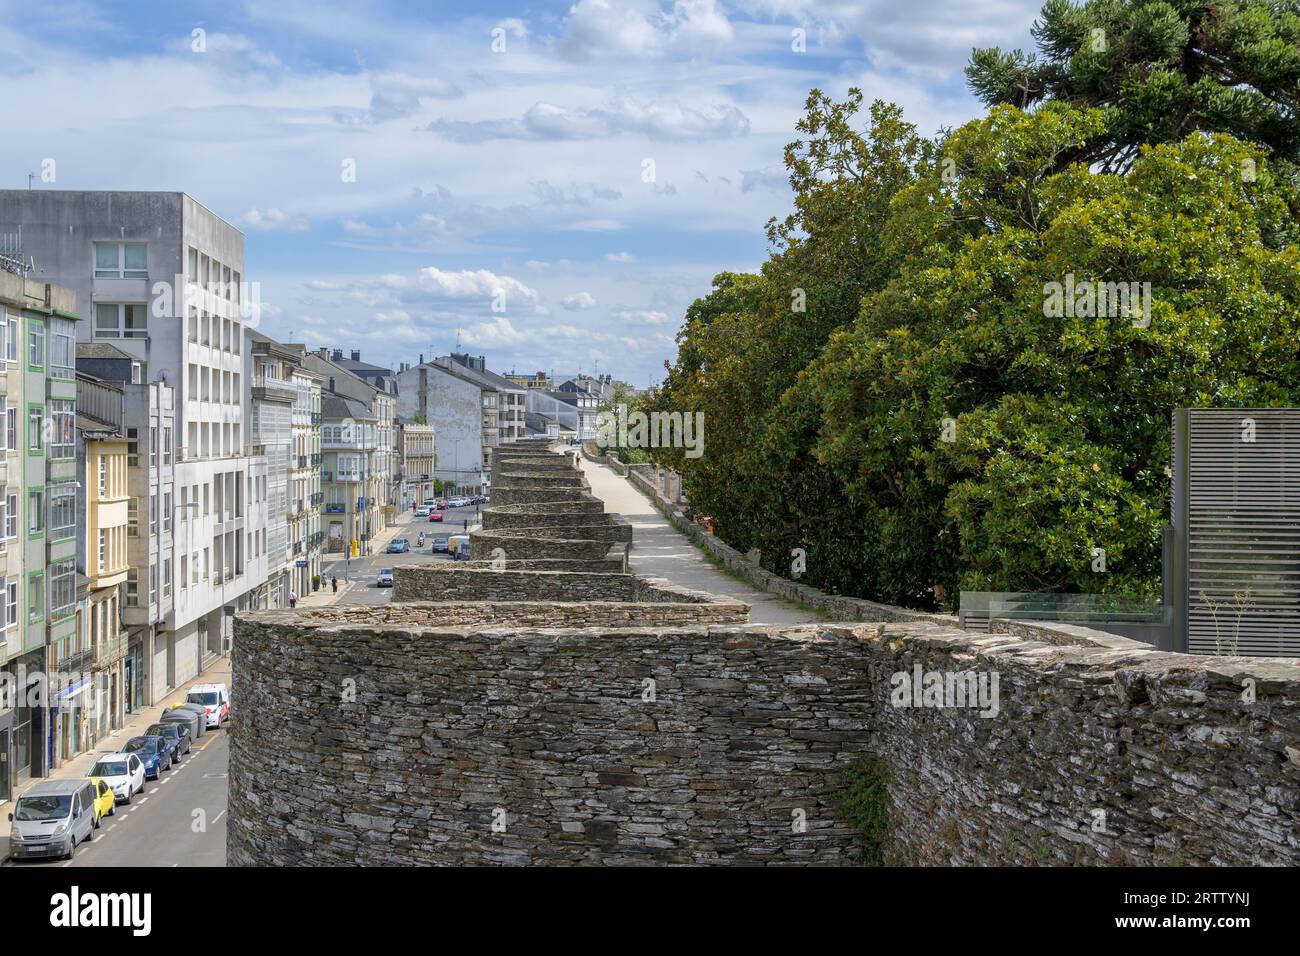 Lugo, Spanien, 6. September 2023: Blick auf die alte römische Mauer, die die Stadt umgibt, die sich entlang des Camino primitivo befindet Stockfoto